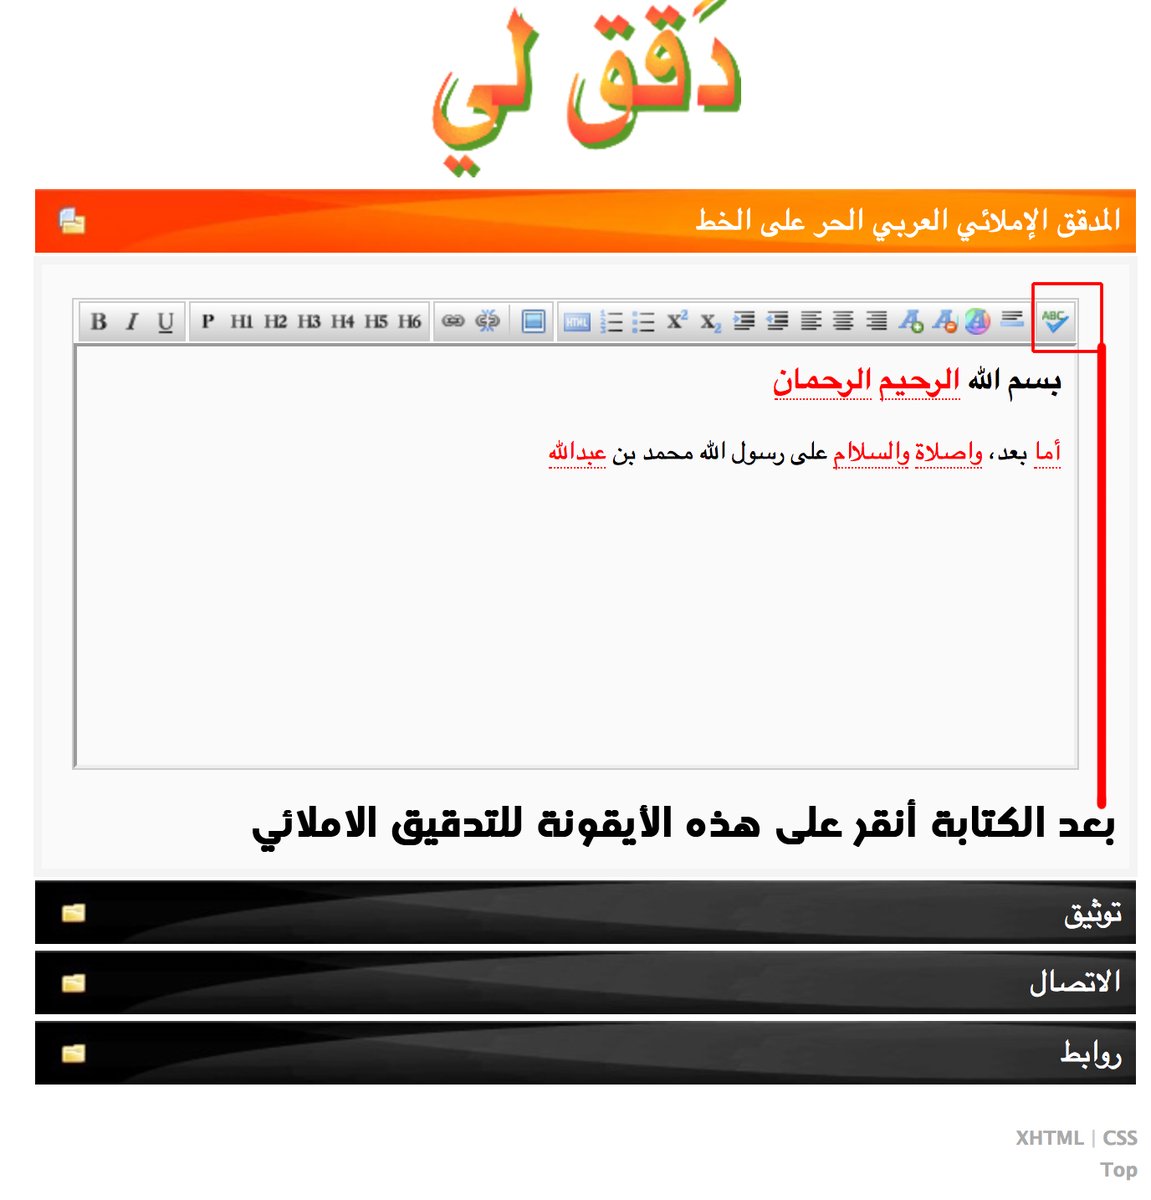 موقع عربي يساعدك في تدقيق الأخطاء الإملائية في النصوص العربية